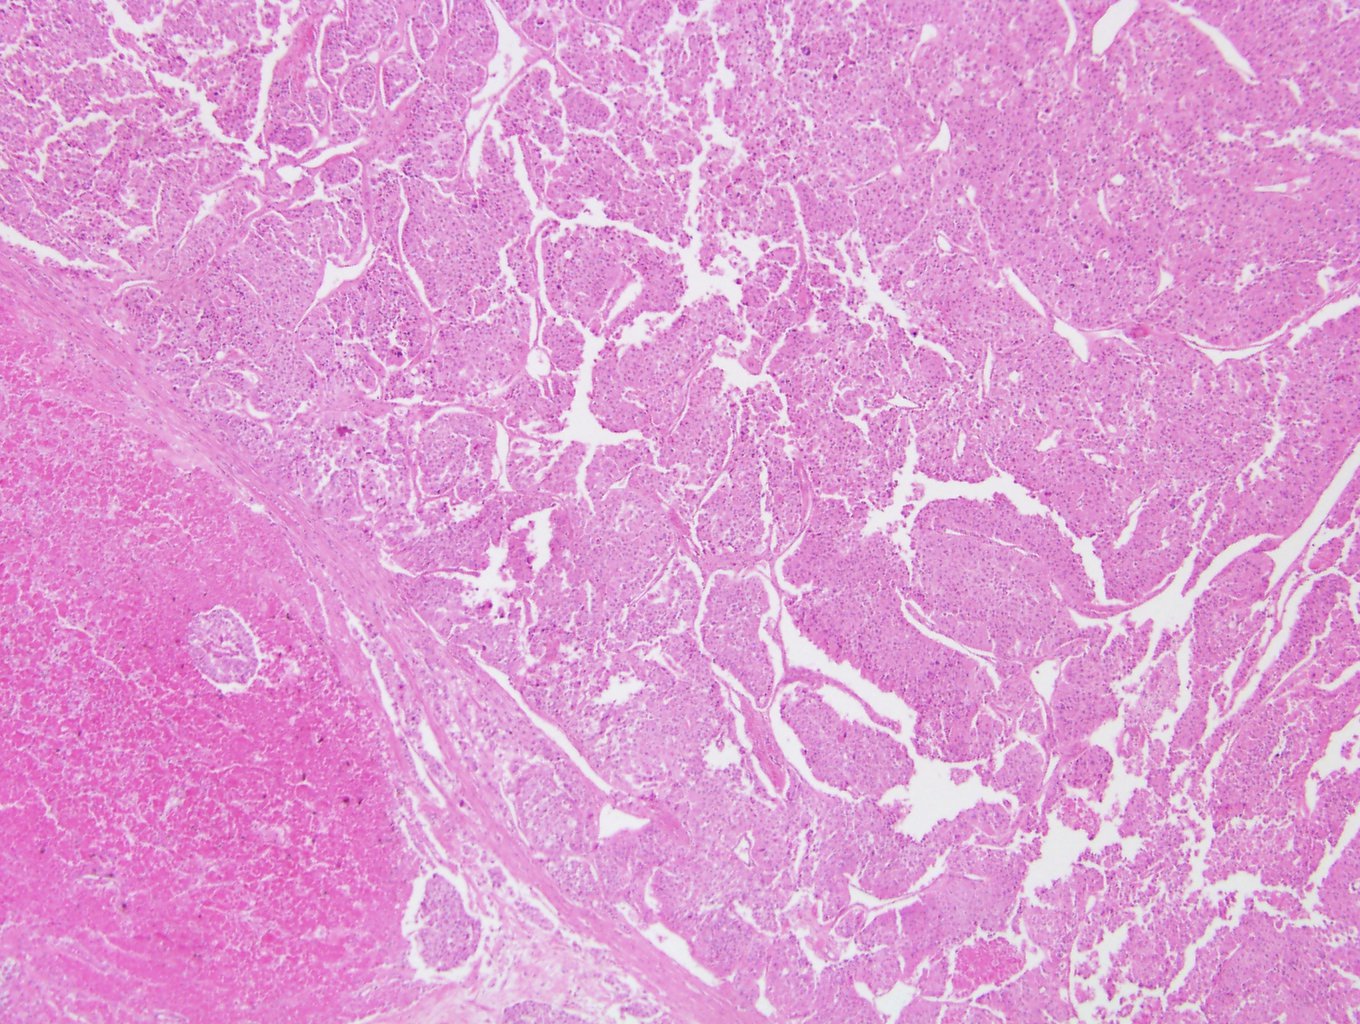 Oncocytic ACC with confluent necrosis